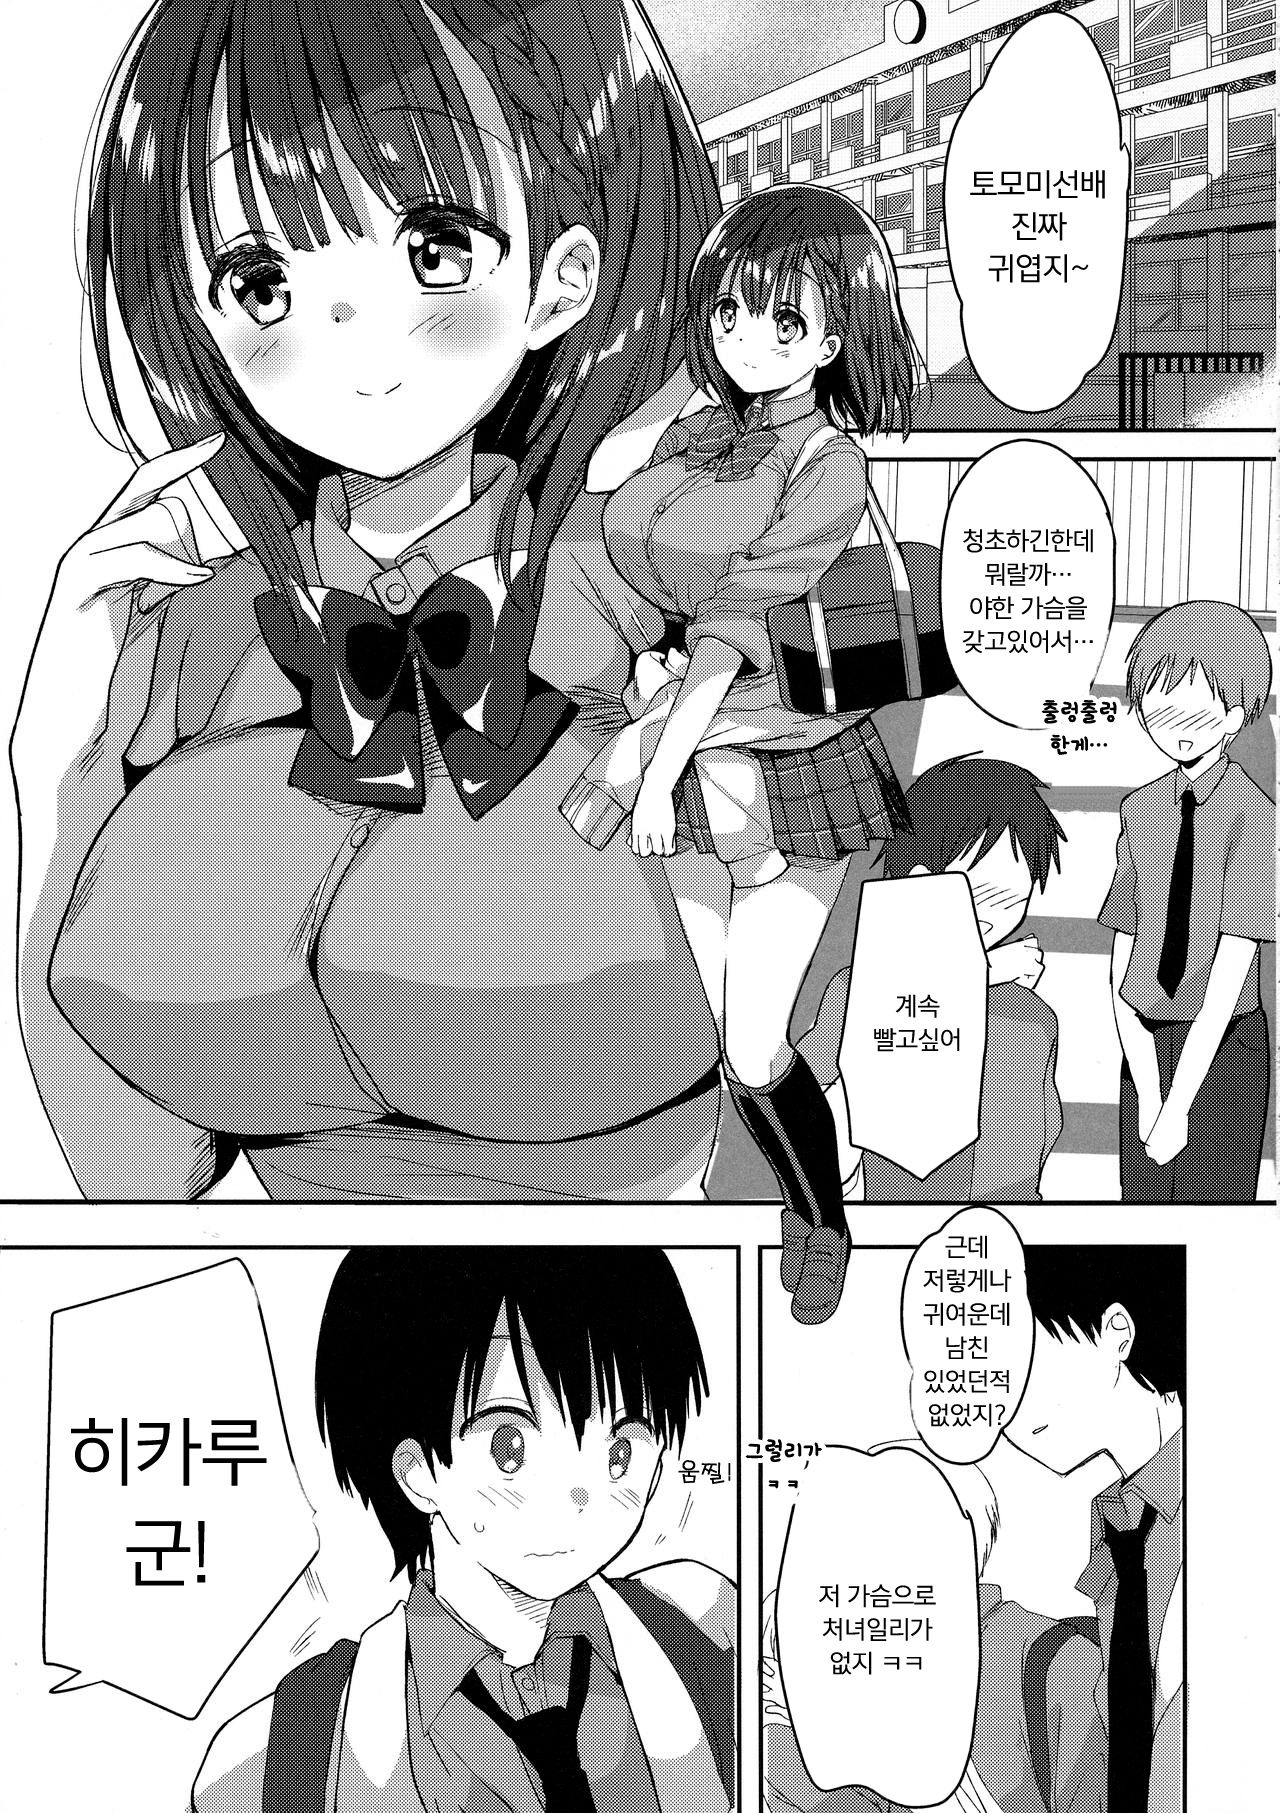 Bonyuu-chan wa dashitai manga